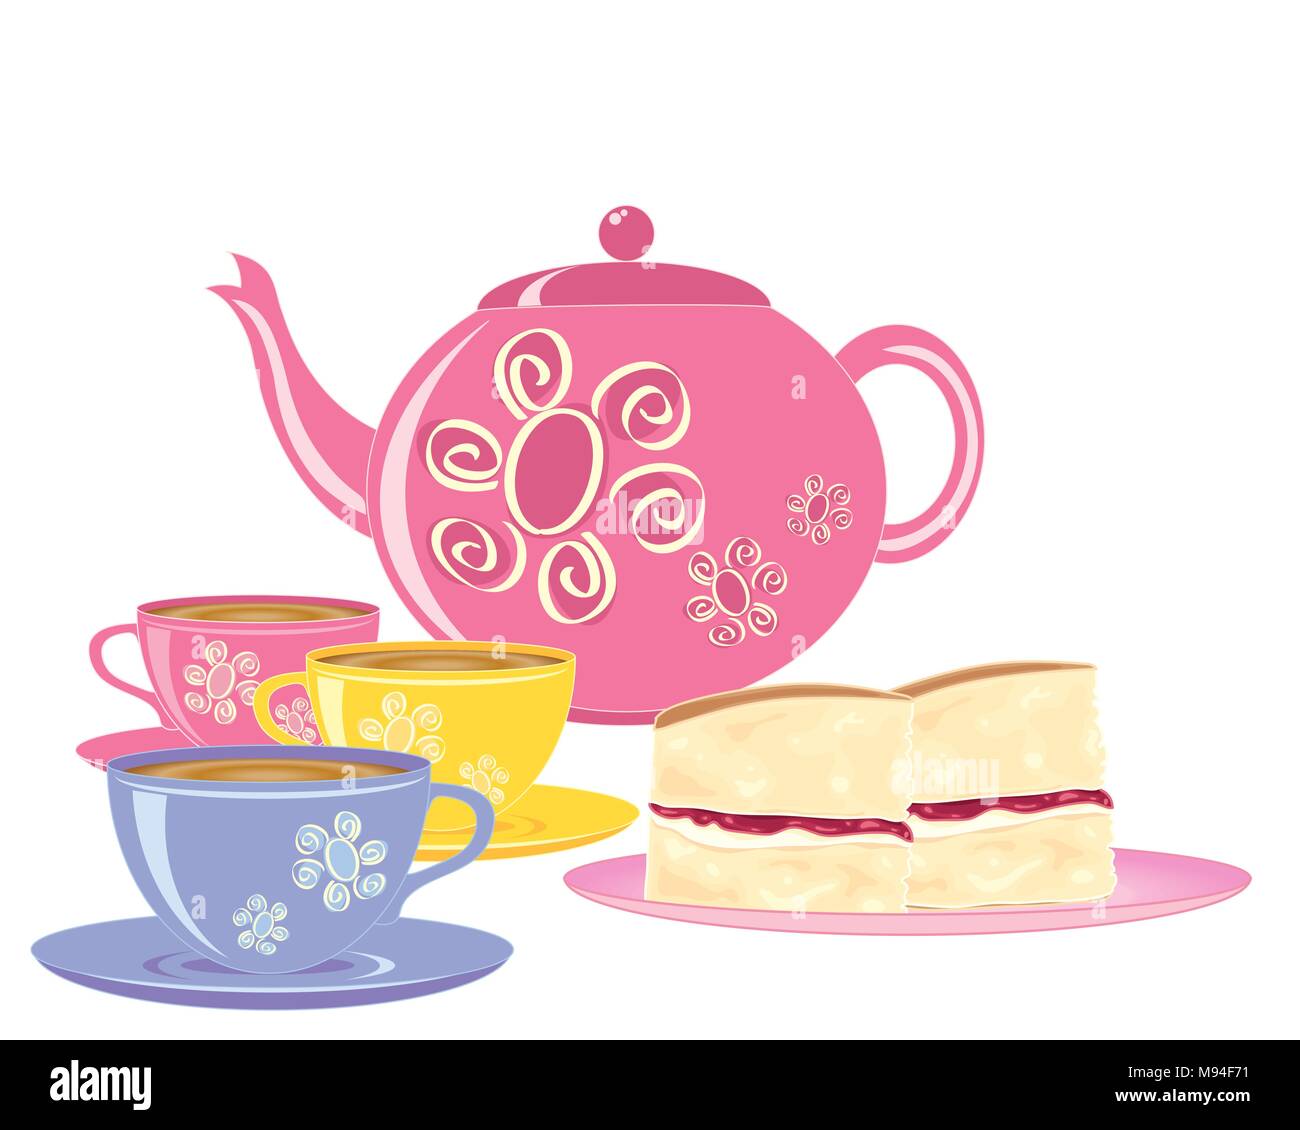 Ein Vektor Abbildung im EPS 10 Format einer rosa Teekanne mit passenden Kaffee Tassen und Teller der Schichten von Victoria Biskuitböden auf einem weißen Hintergrund Stock Vektor